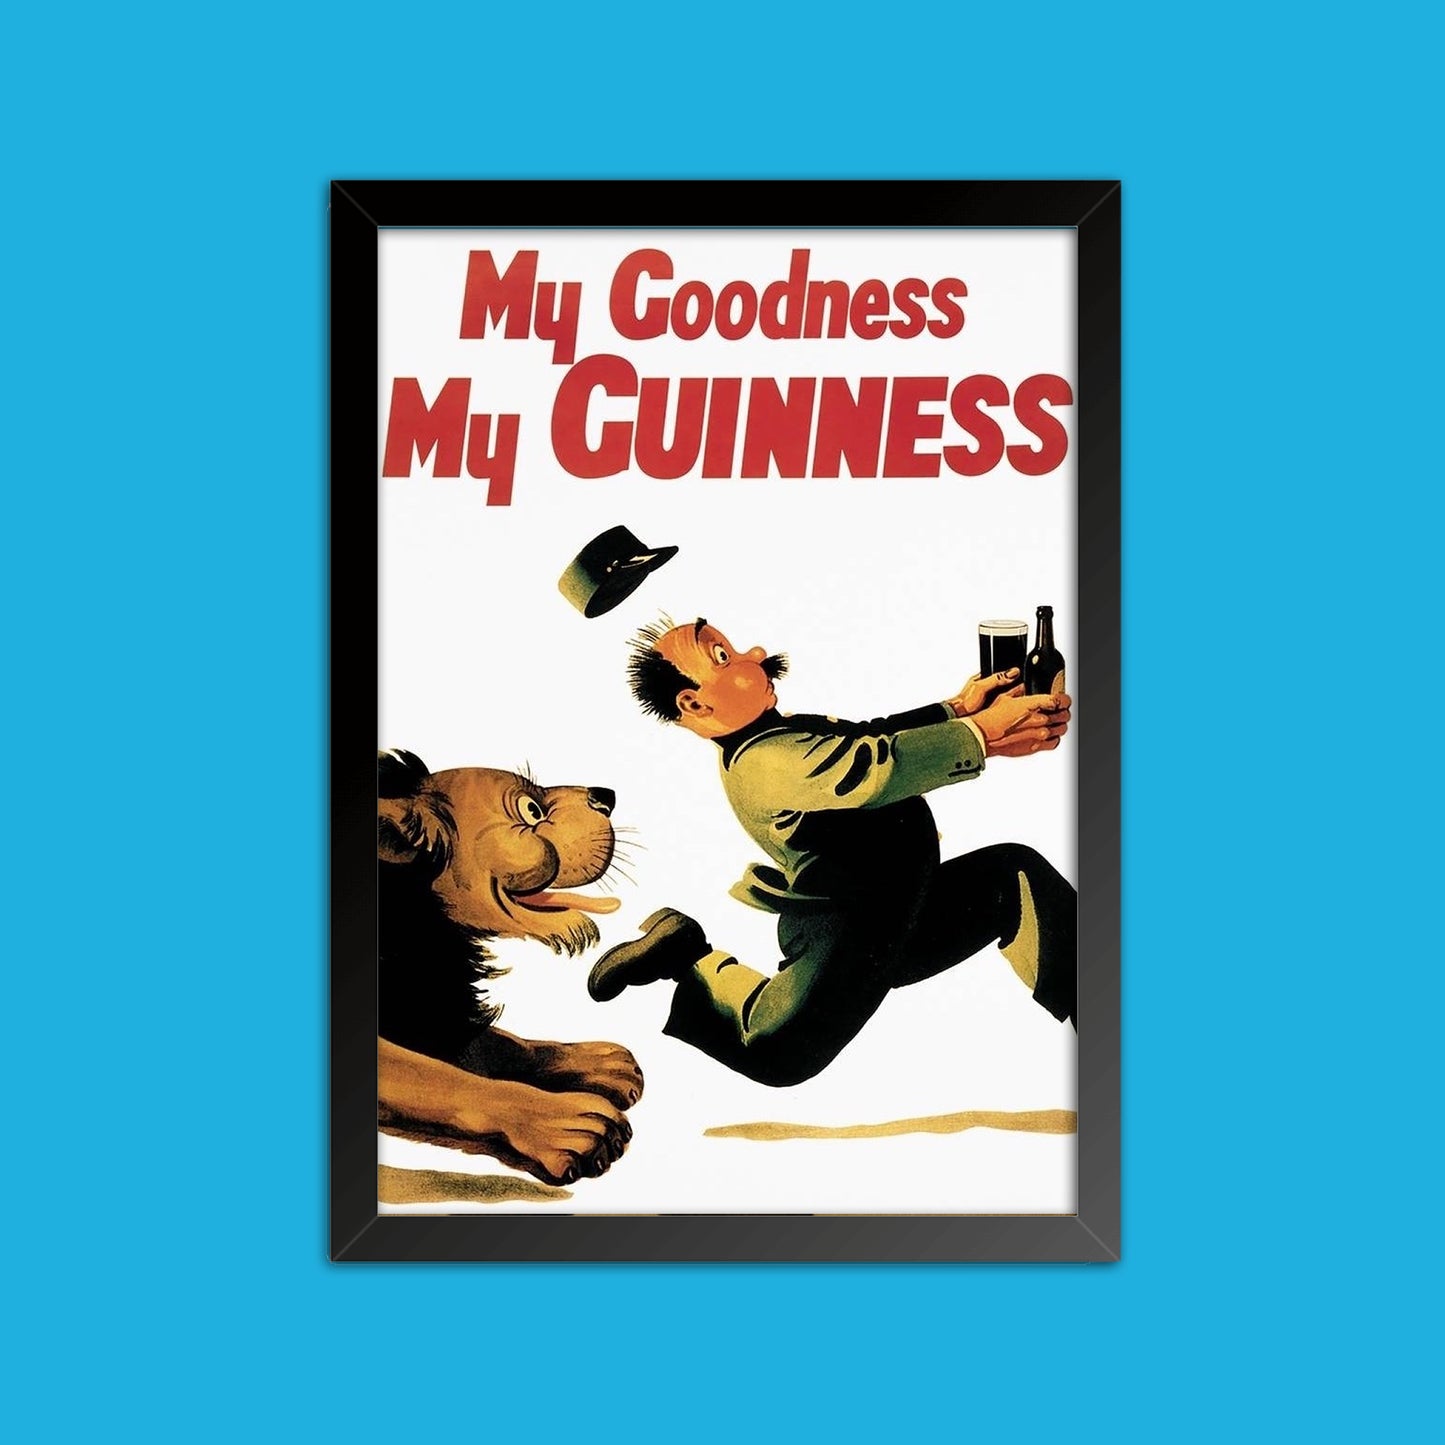 Quadro Guinness "Apartamento Chandler e Joey" - Friends - Séries de TV